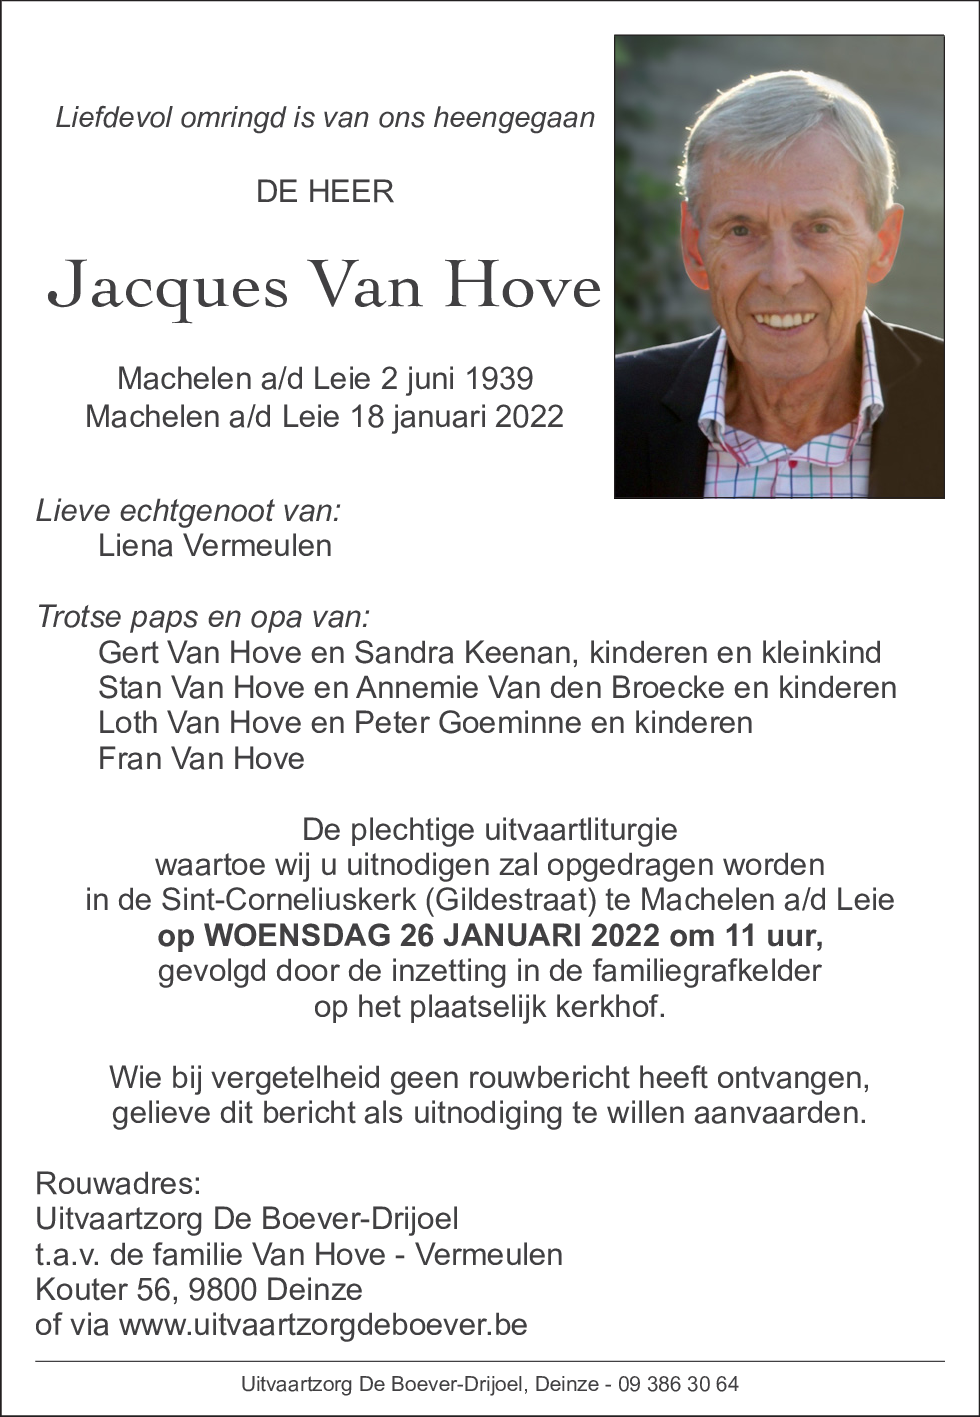 Jacques Van Hove